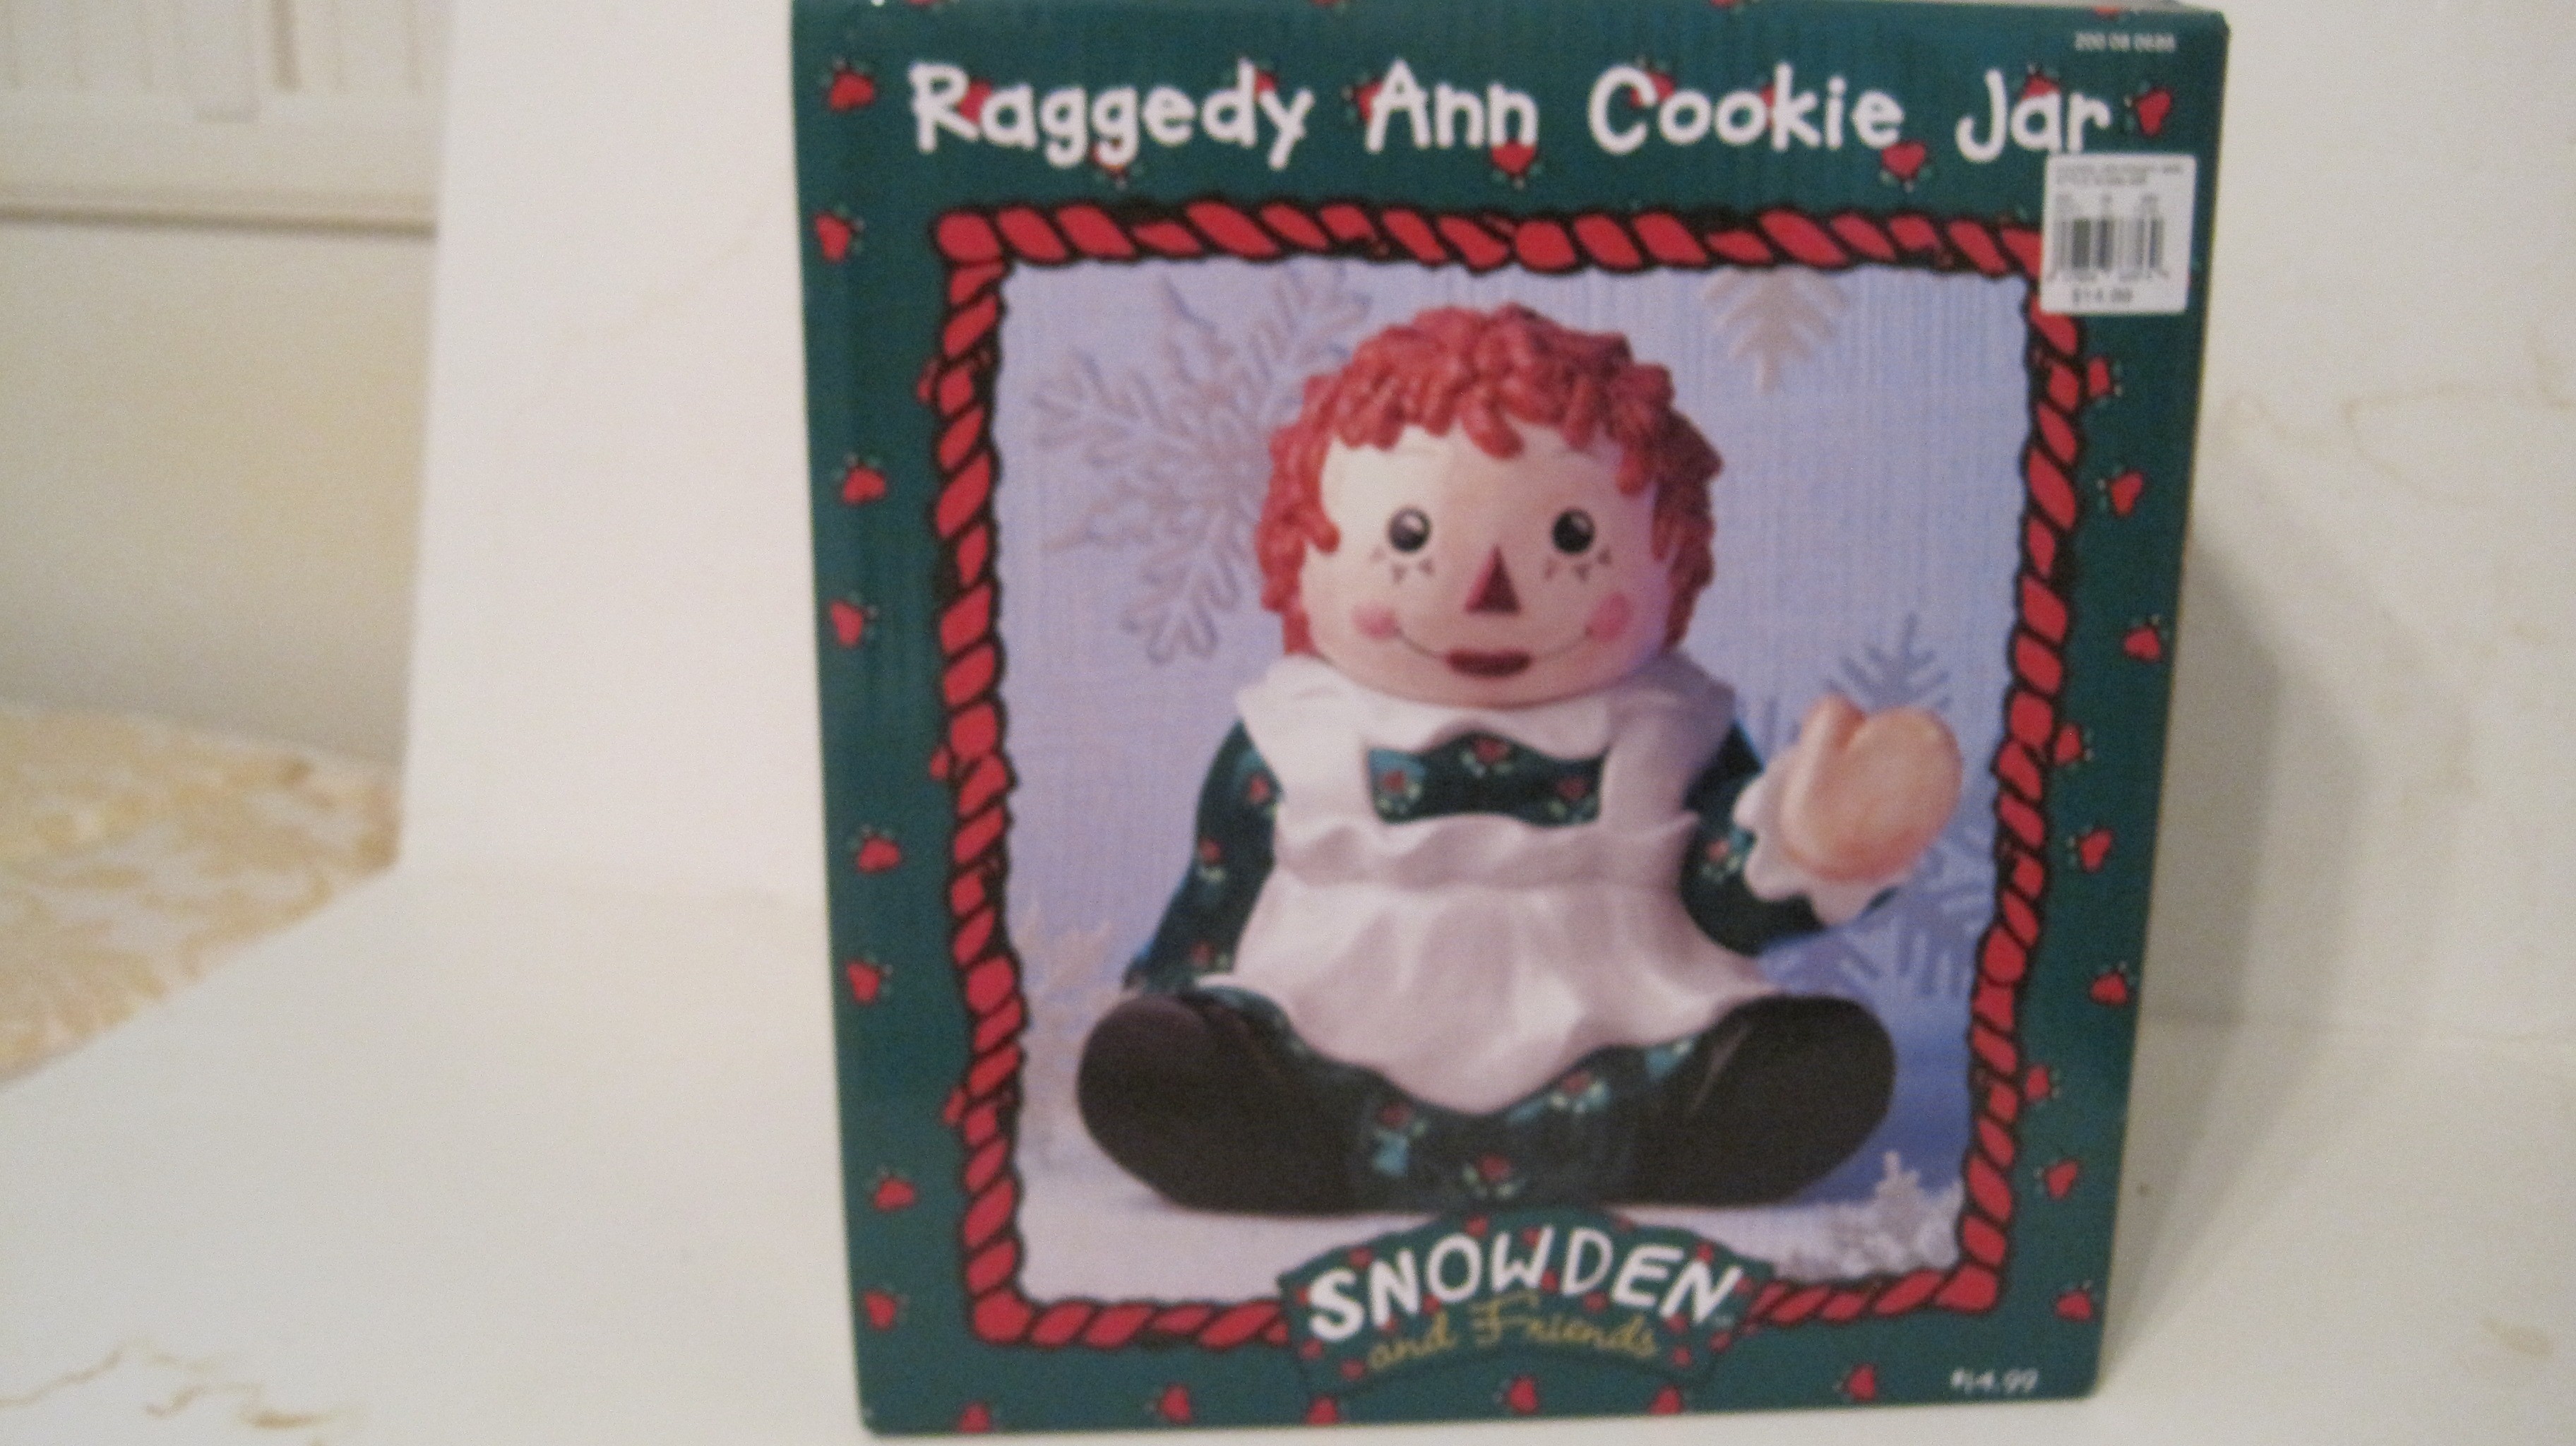 SNOWDEN - Raggedy Ann Cookie Jar